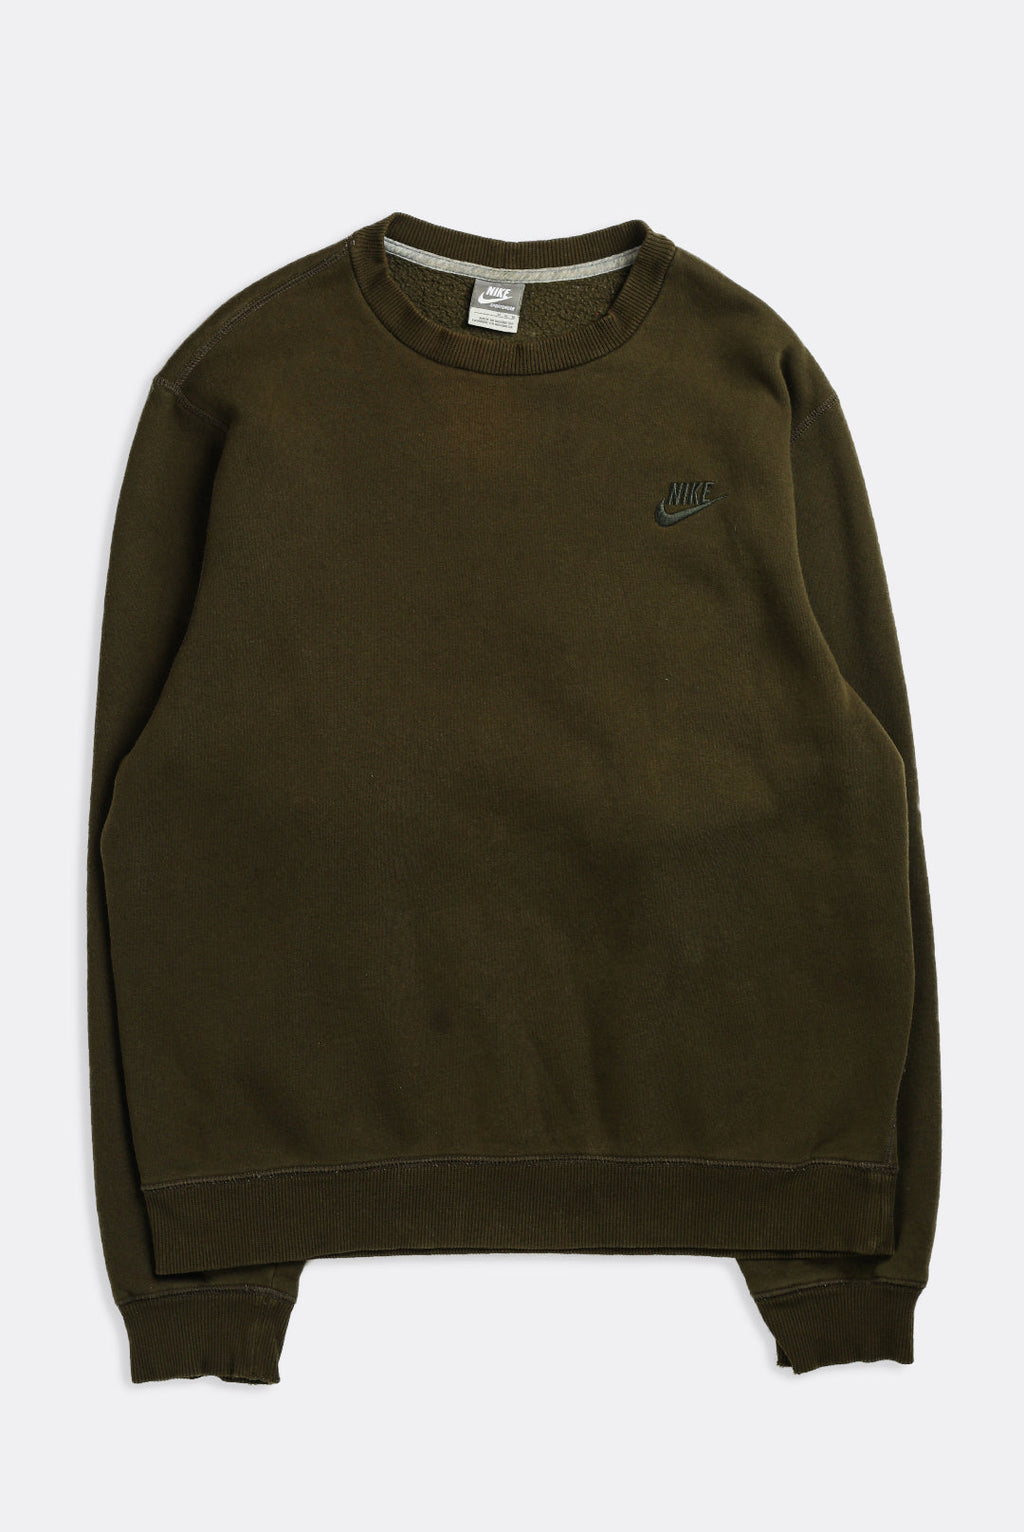 Vintage Nike Sweatshirt – Cerqular